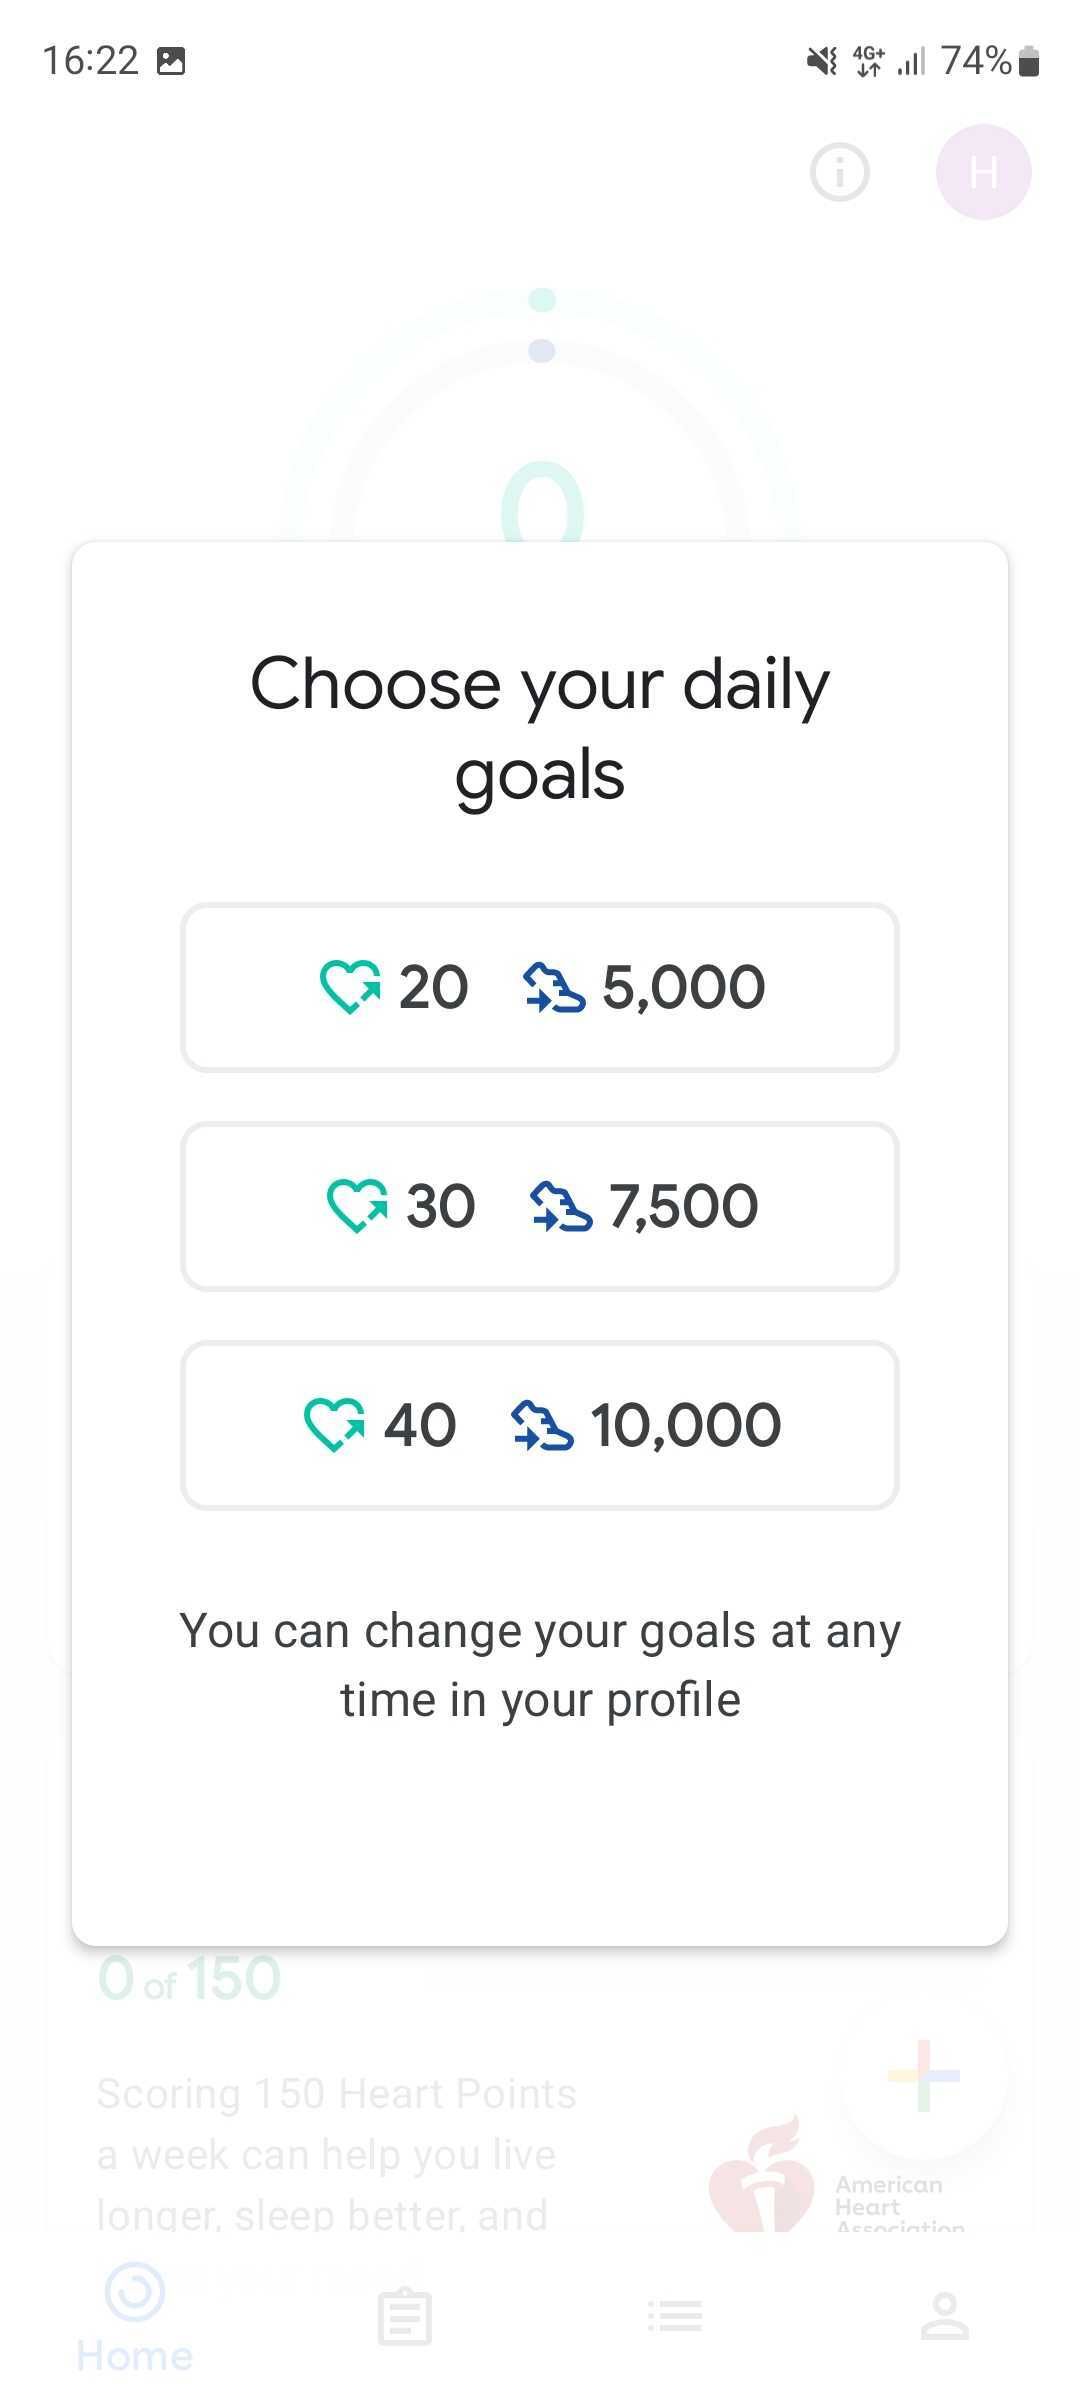 Captura de tela do app Google Fit solicitando que o usuário escolha suas metas de atividade diária